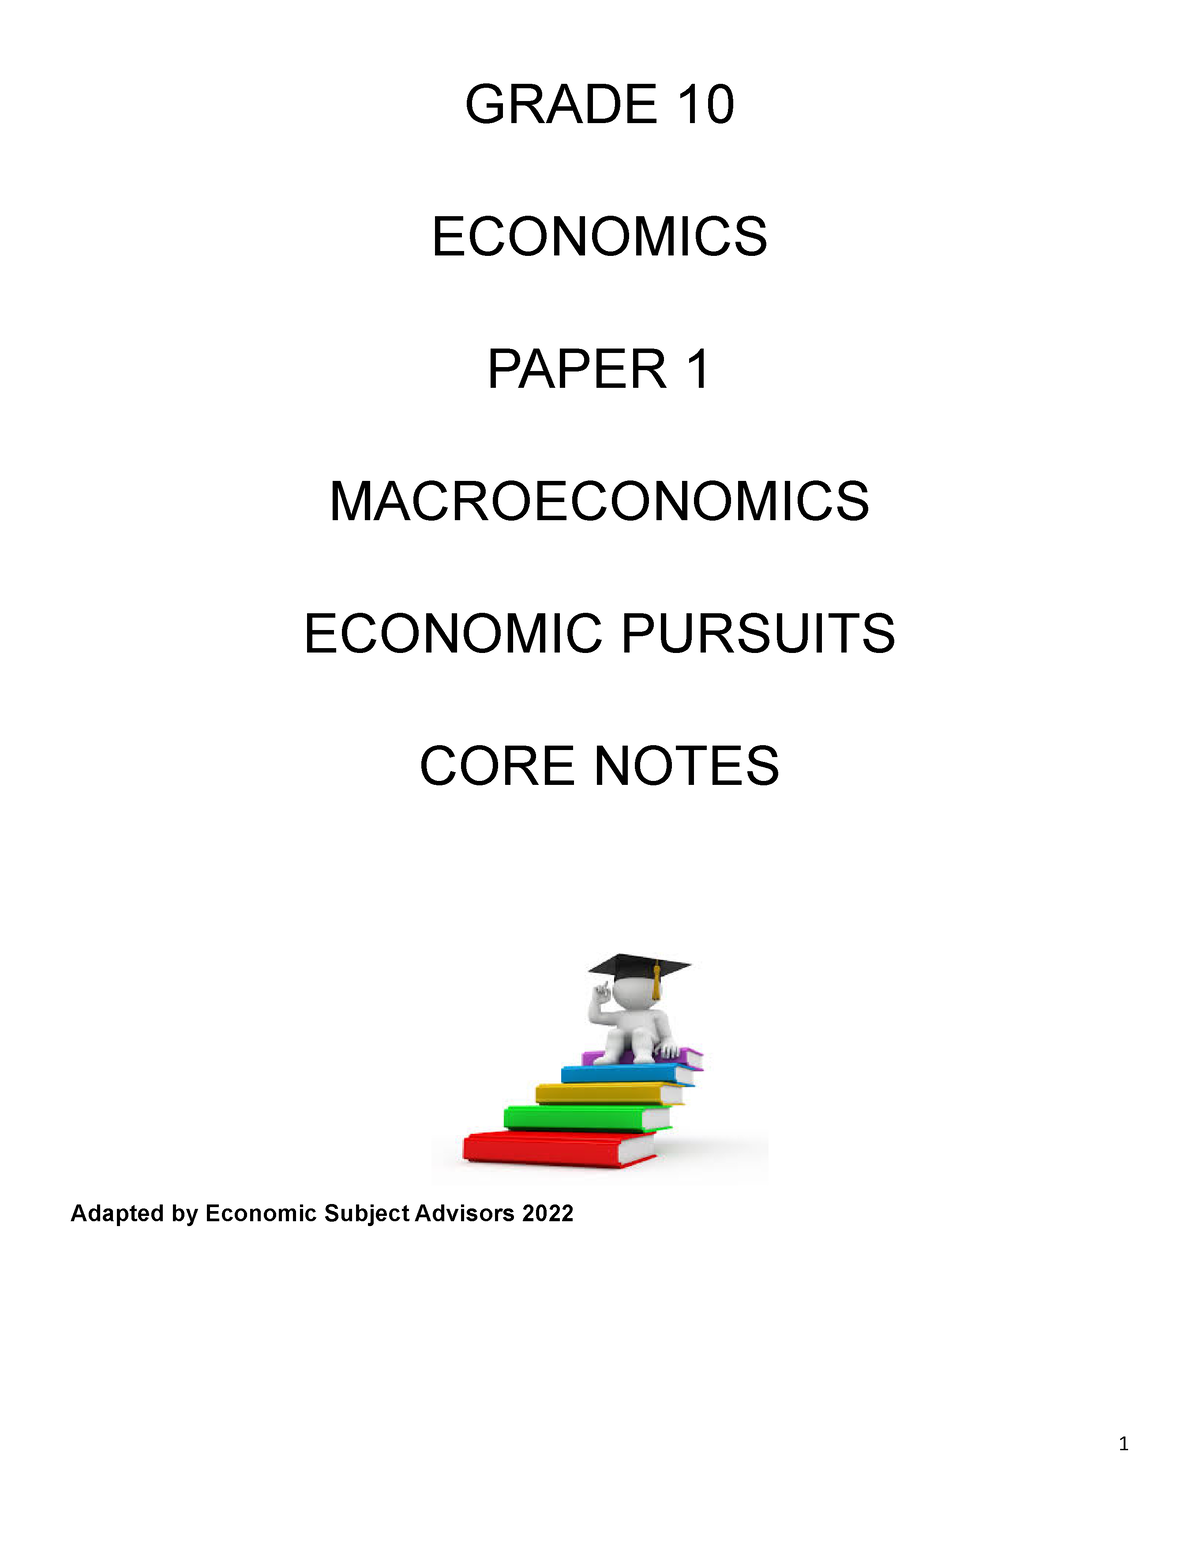 grade 10 economics essays term 3 pdf download